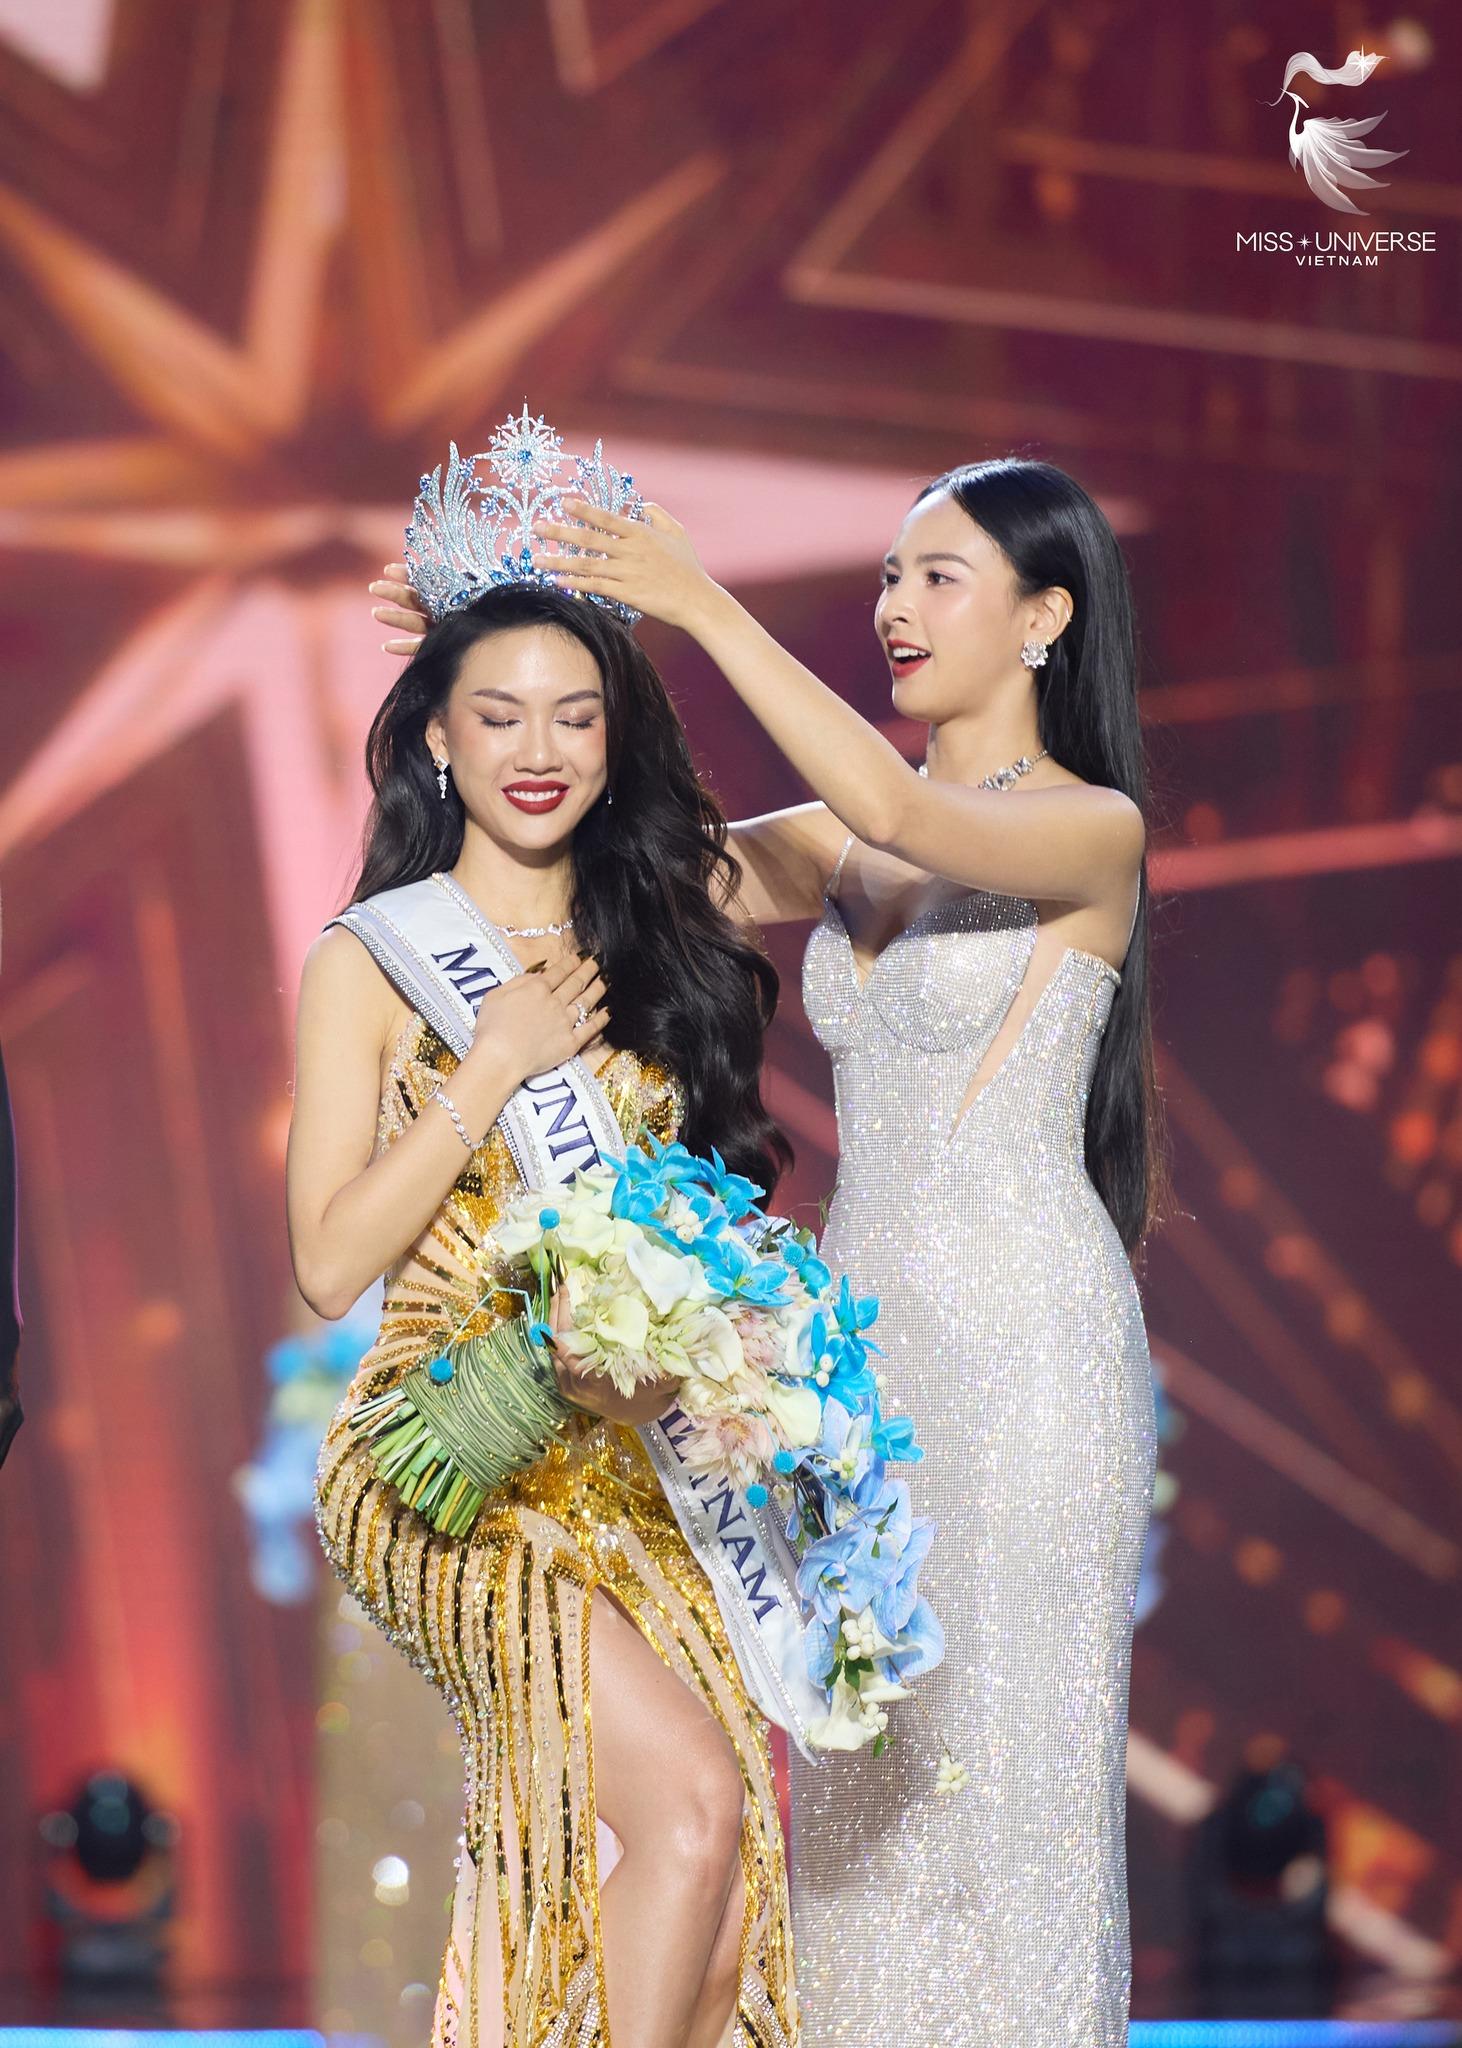 Giám khảo Miss Universe Vietnam xin lỗi vì đánh giá sai, nhận xét Bùi Quỳnh Hoa 'không đủ tư cách Hoa hậu' - ảnh 5